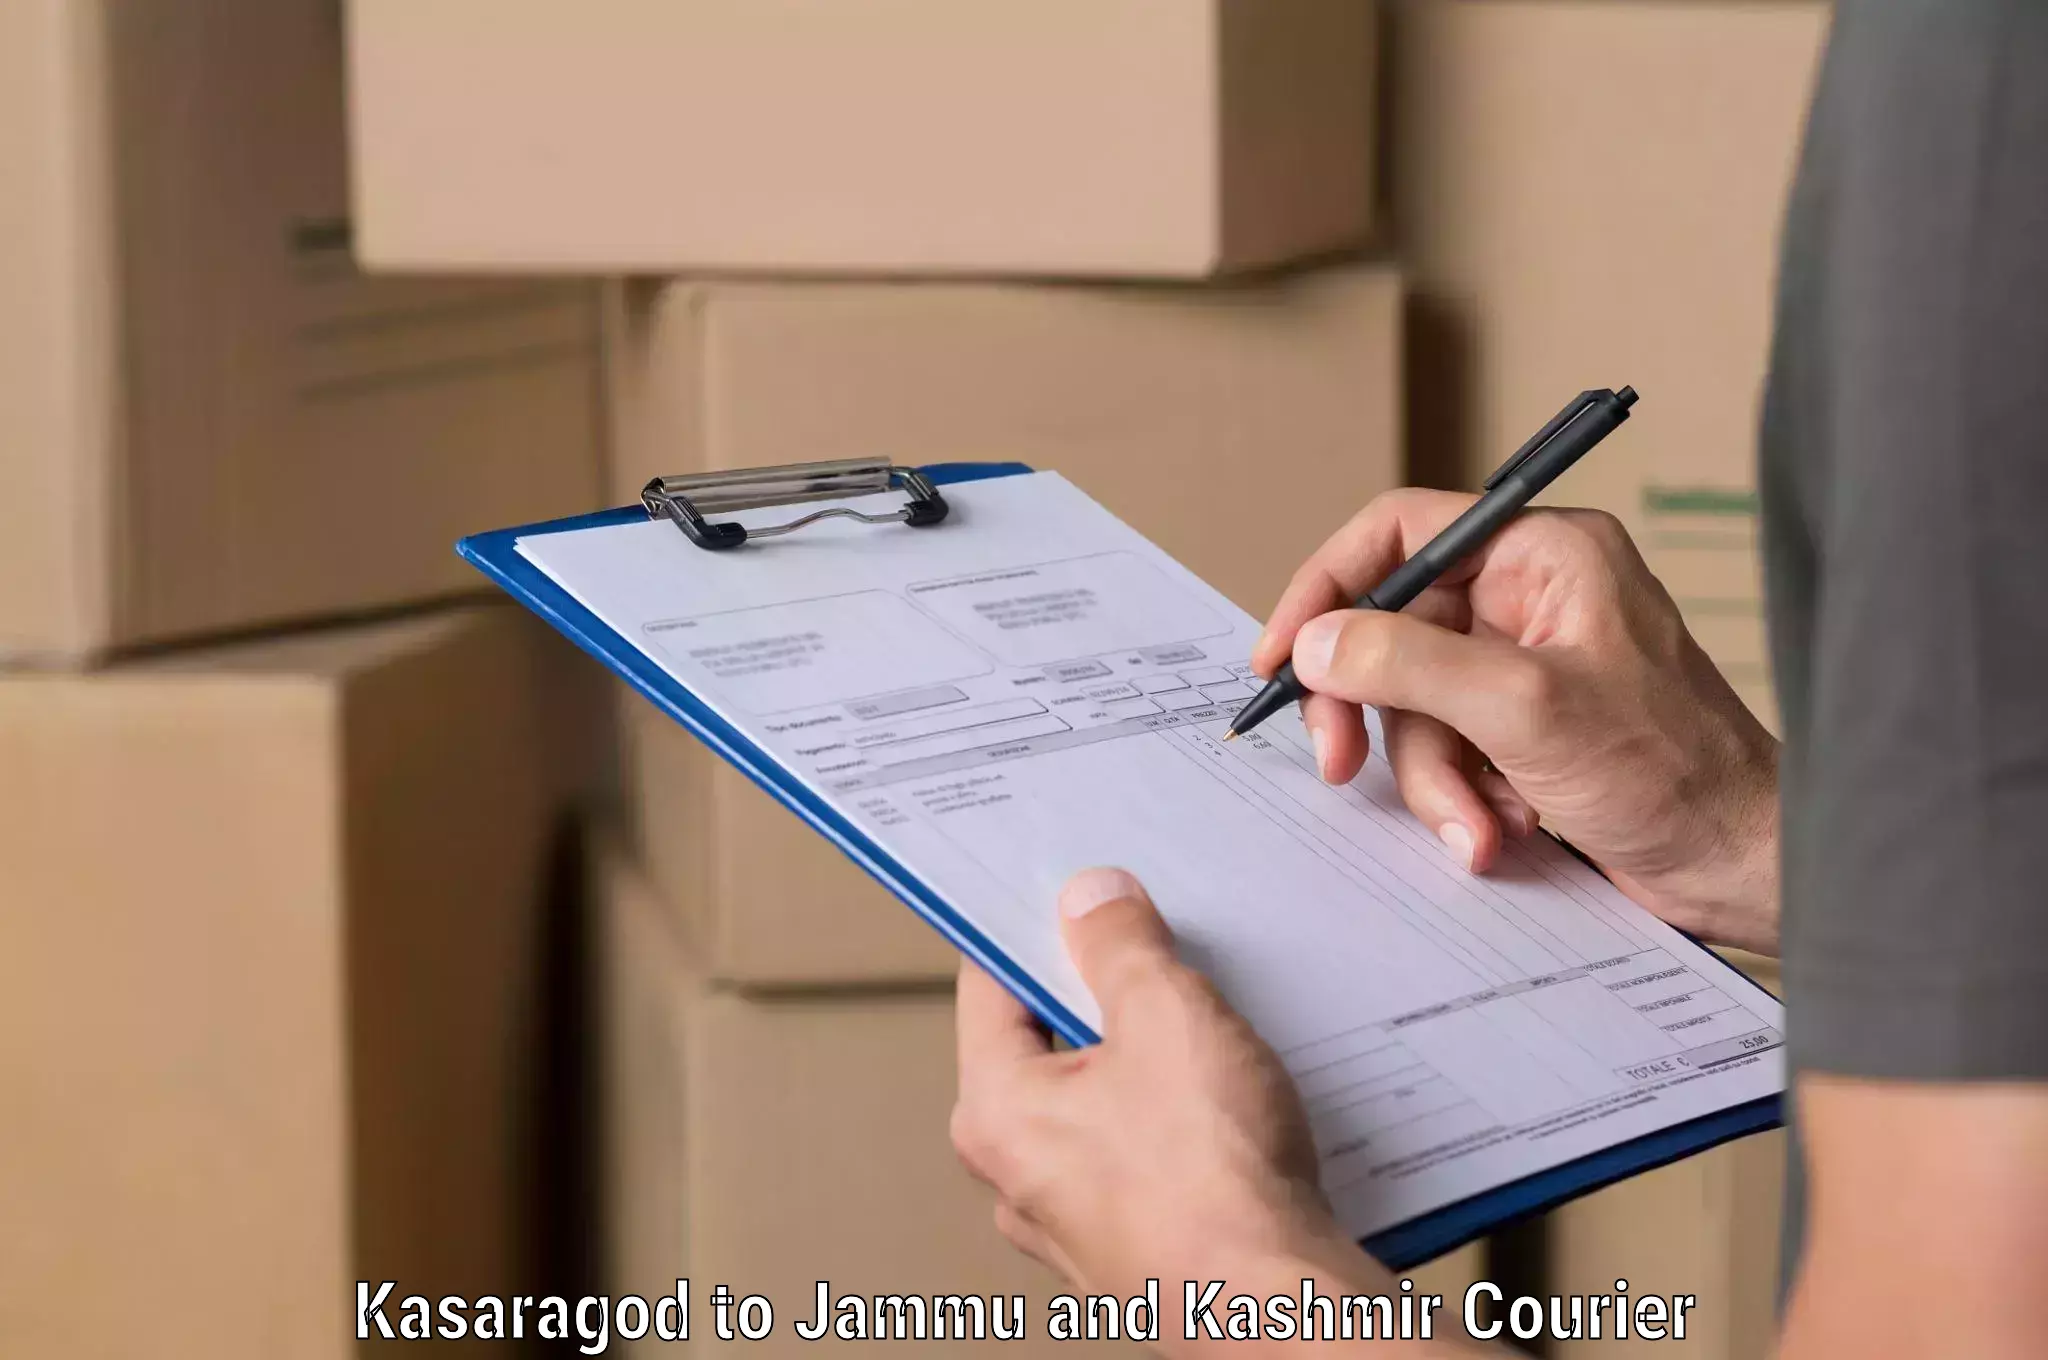 Professional courier handling Kasaragod to Jakh